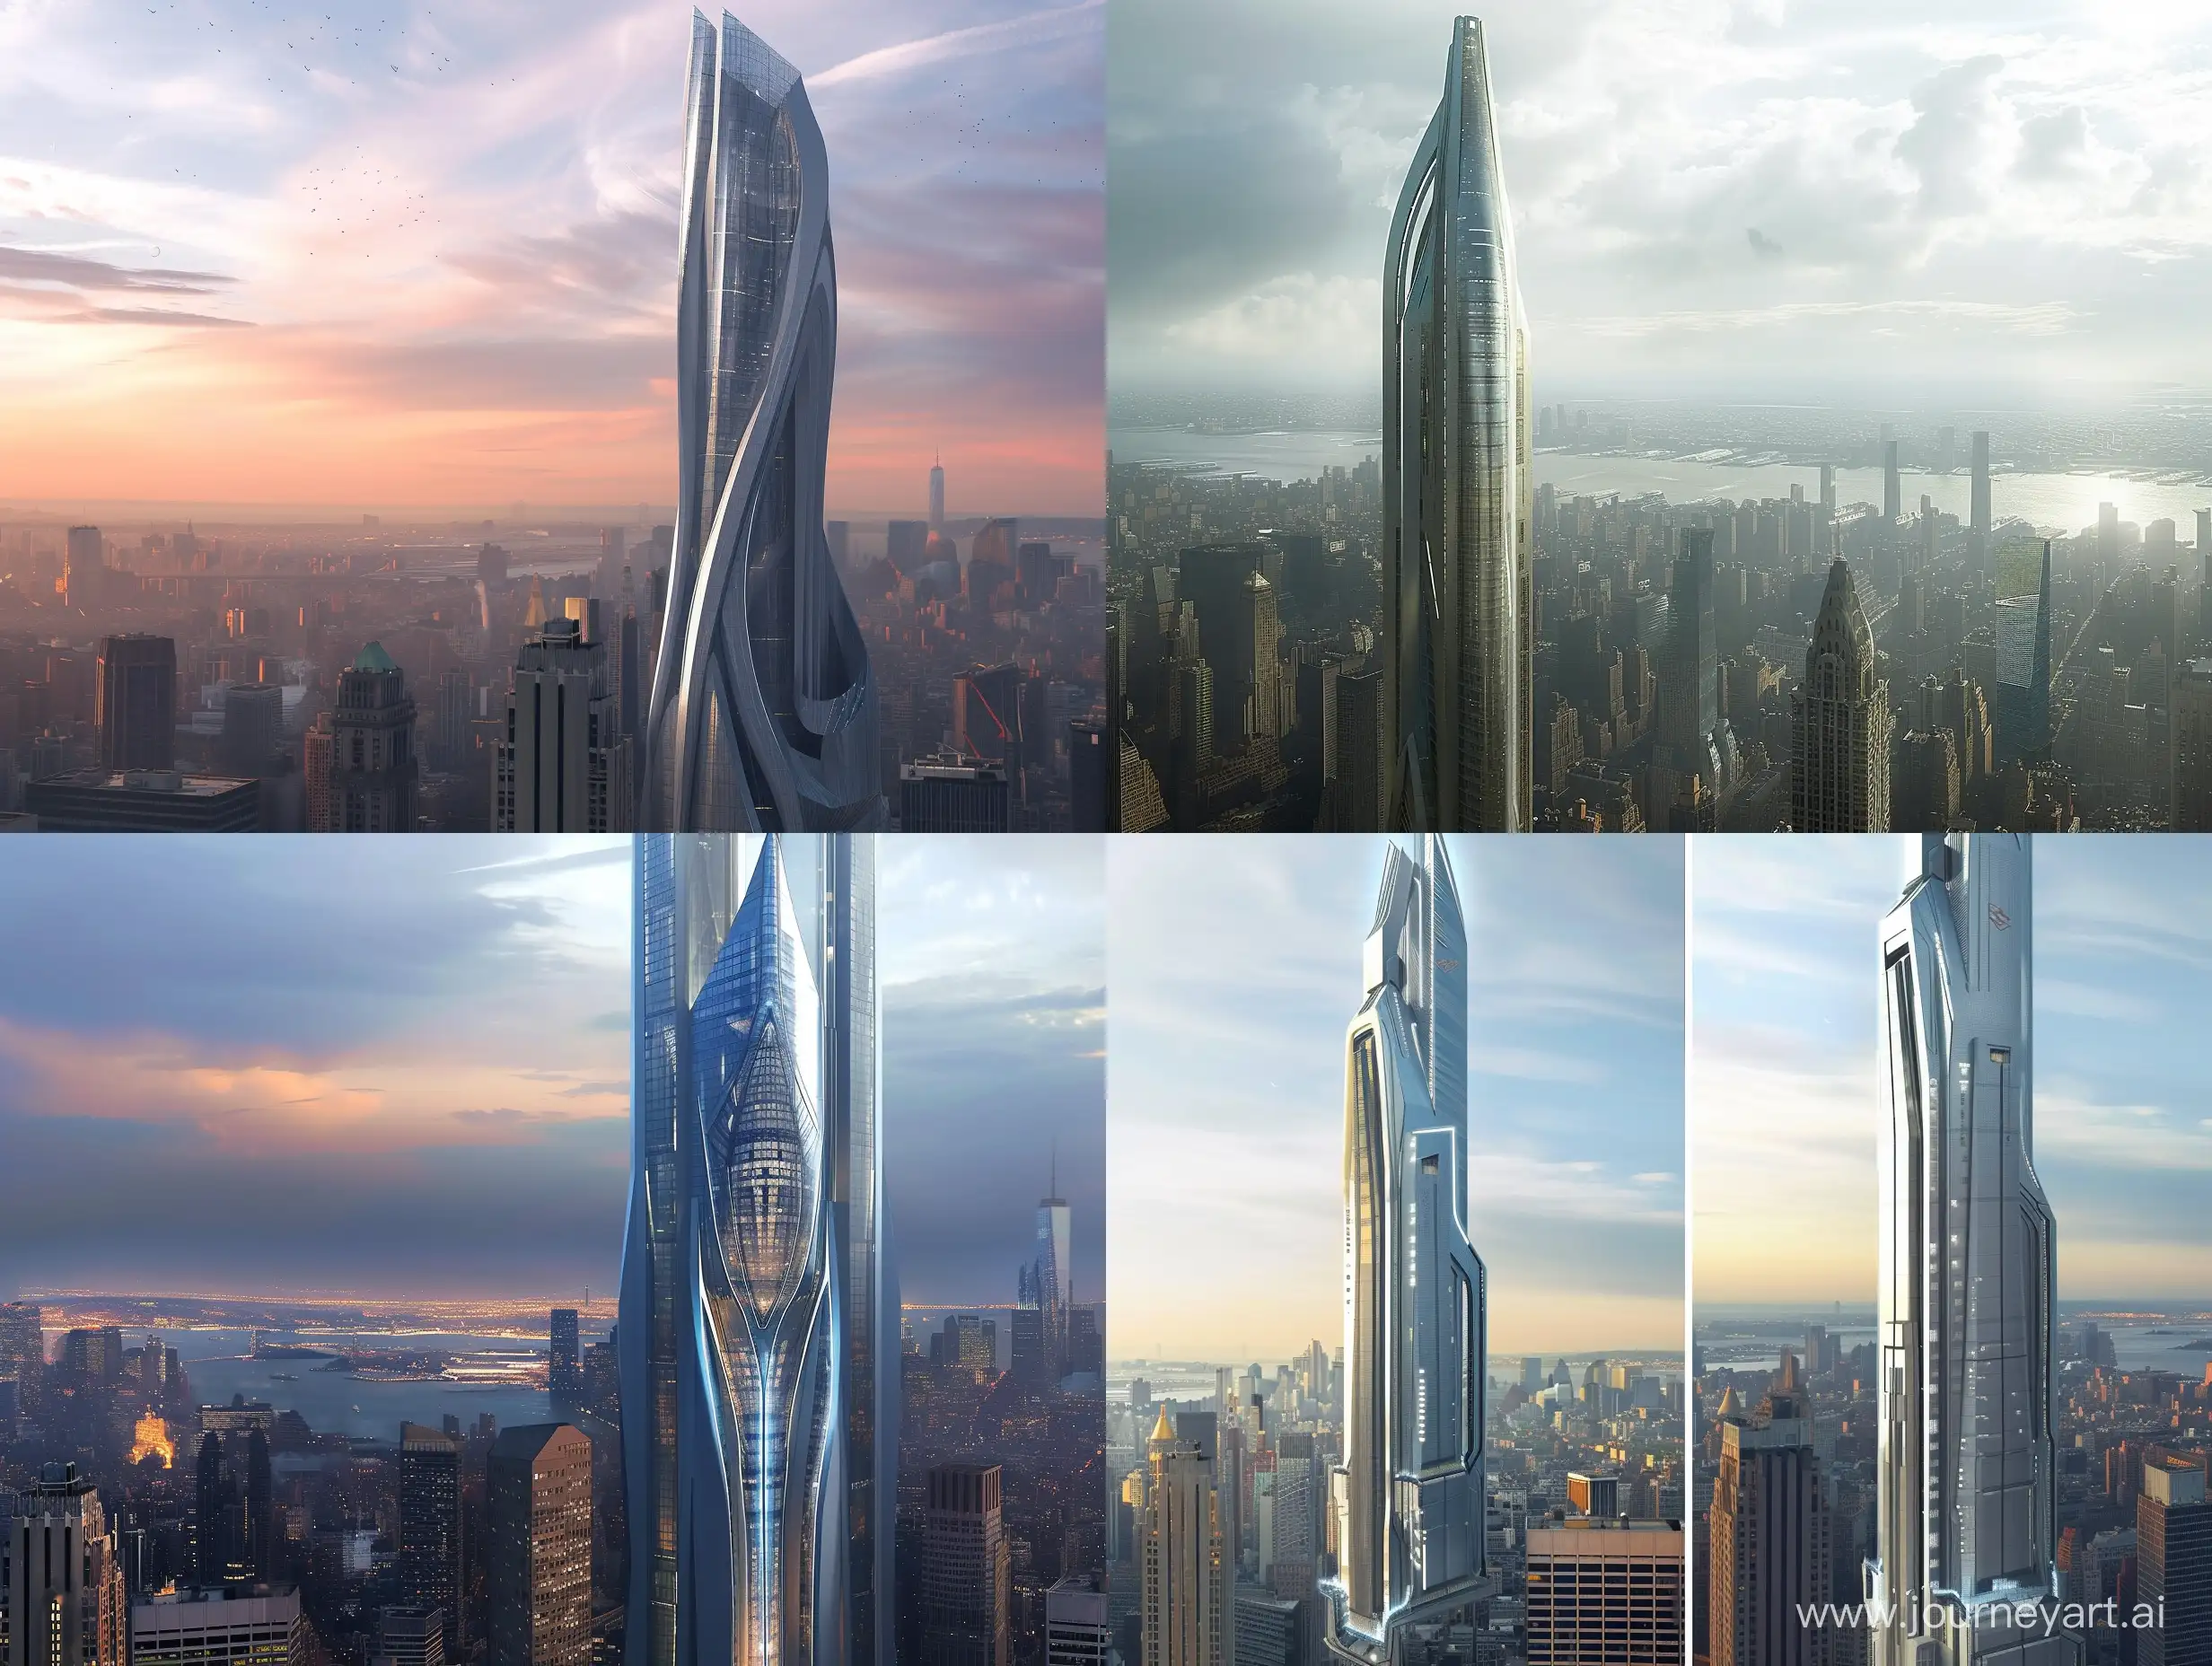 Futuristic-SciFi-Skyscraper-Design-for-New-York-City